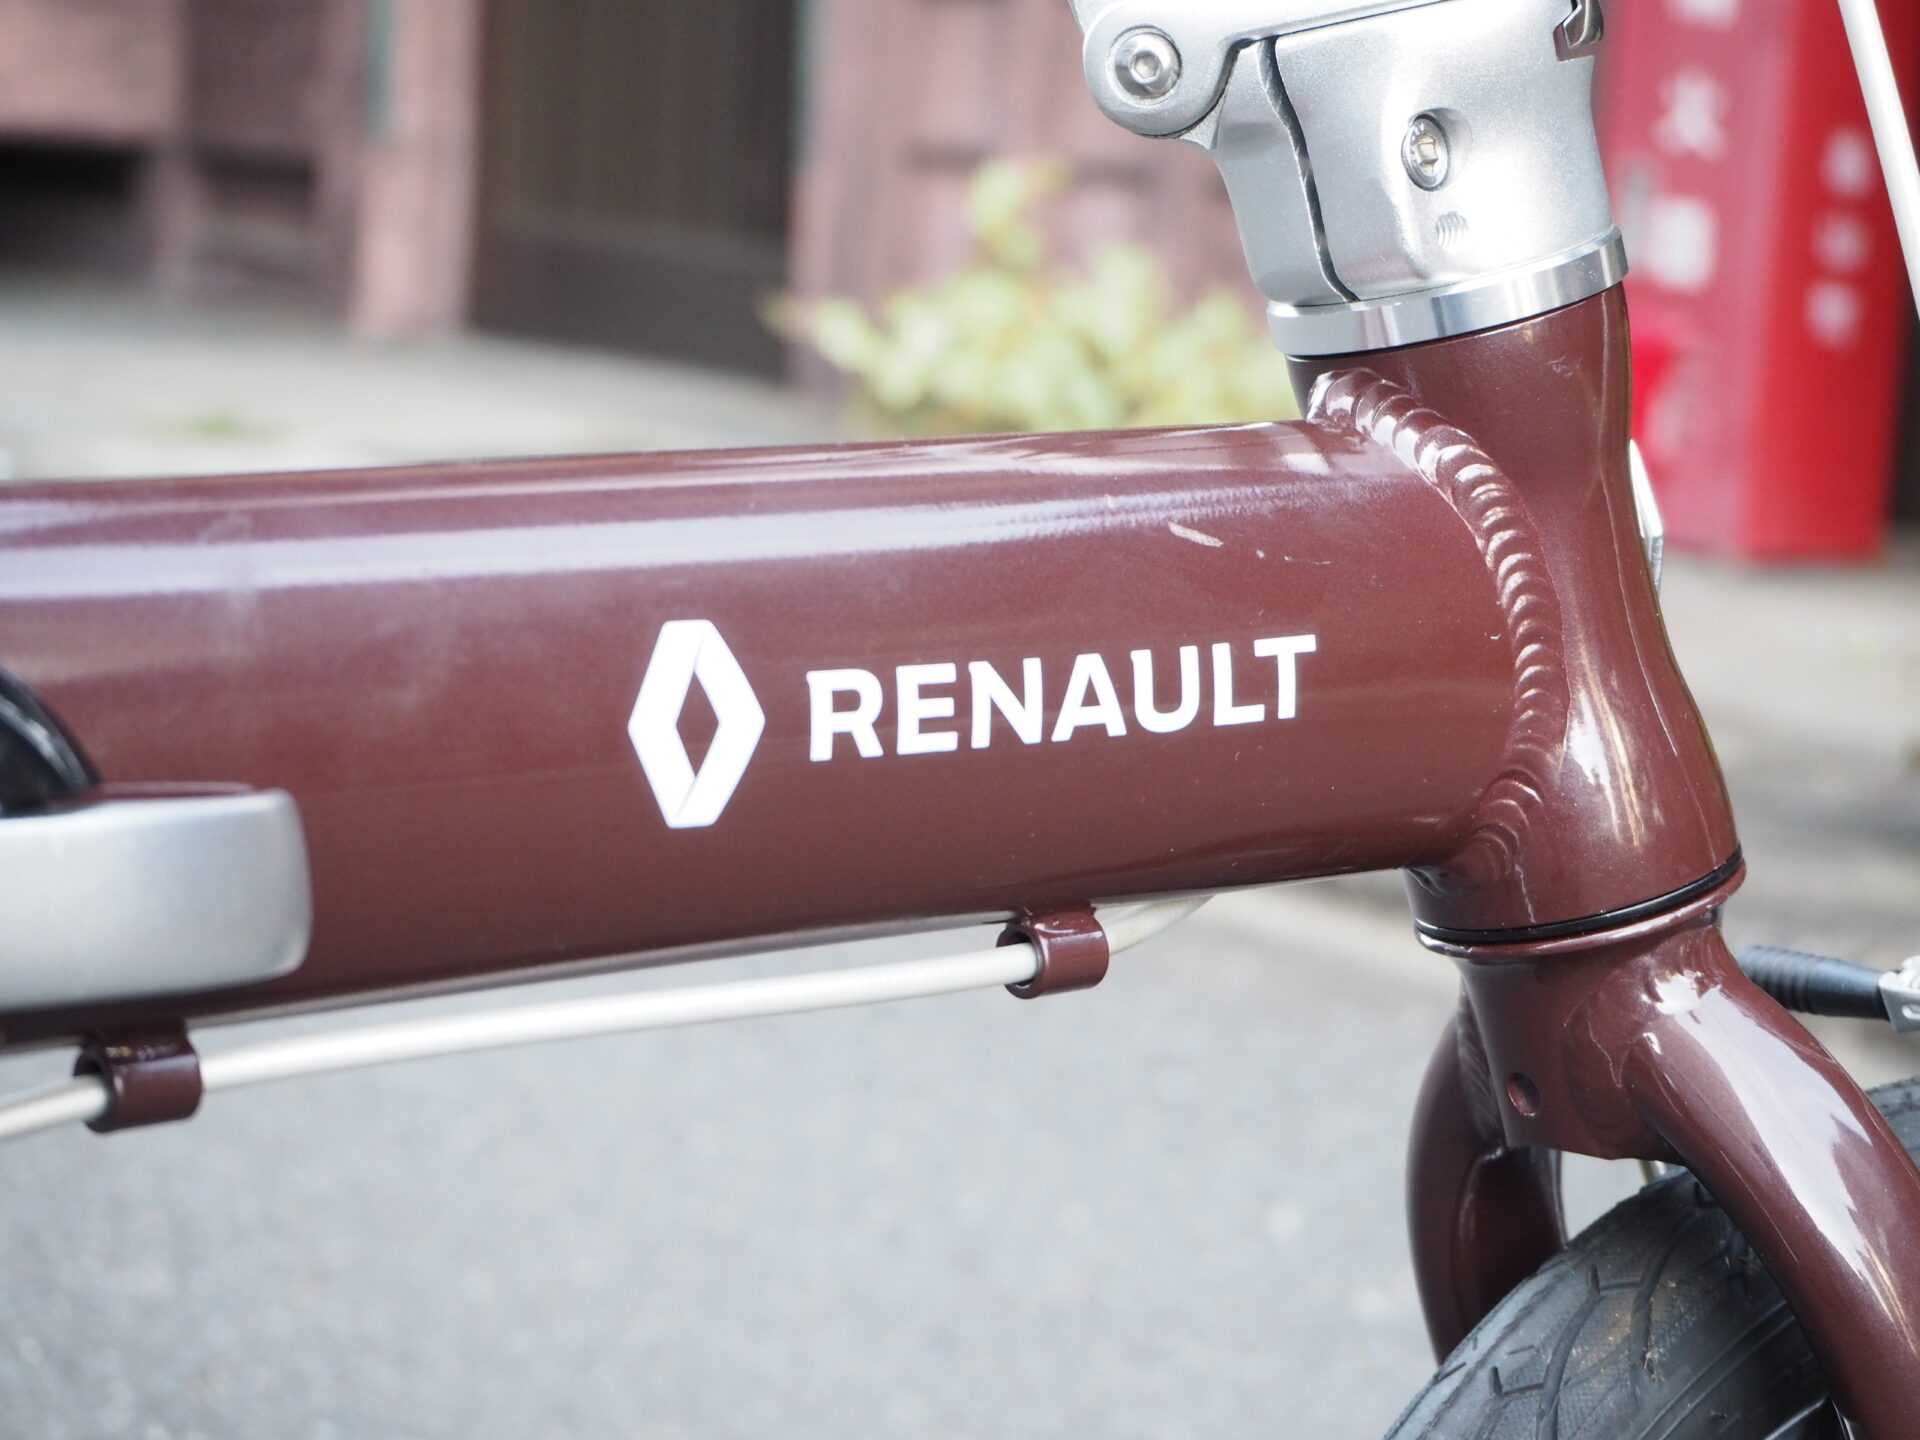 RENAULT(ルノー) LIGHT8 AL-FDB140 ラグーンブルー 軽量アルミフレーム 14インチ コンパクト折りたたみ自転車 本体